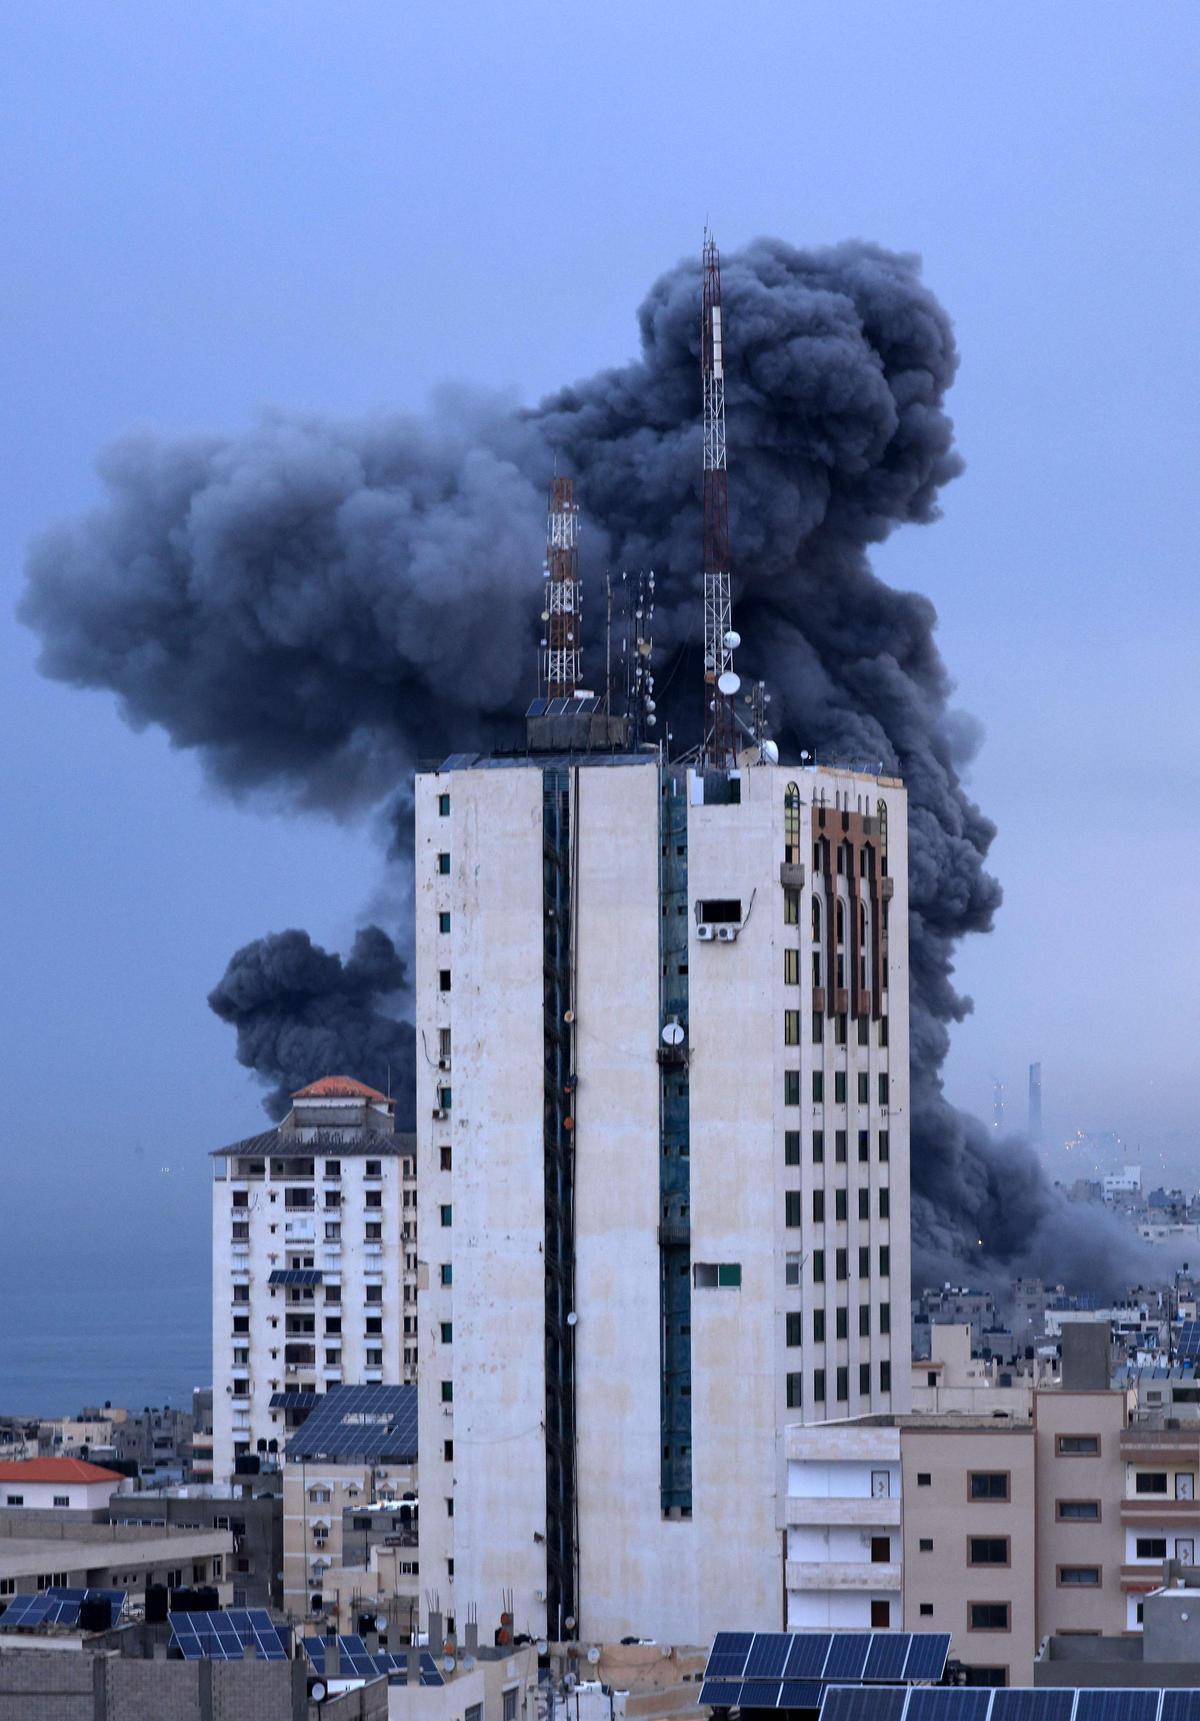 Columnas de humo se elevan desde un edificio en la ciudad de Gaza, tras un bombardeo de Israel